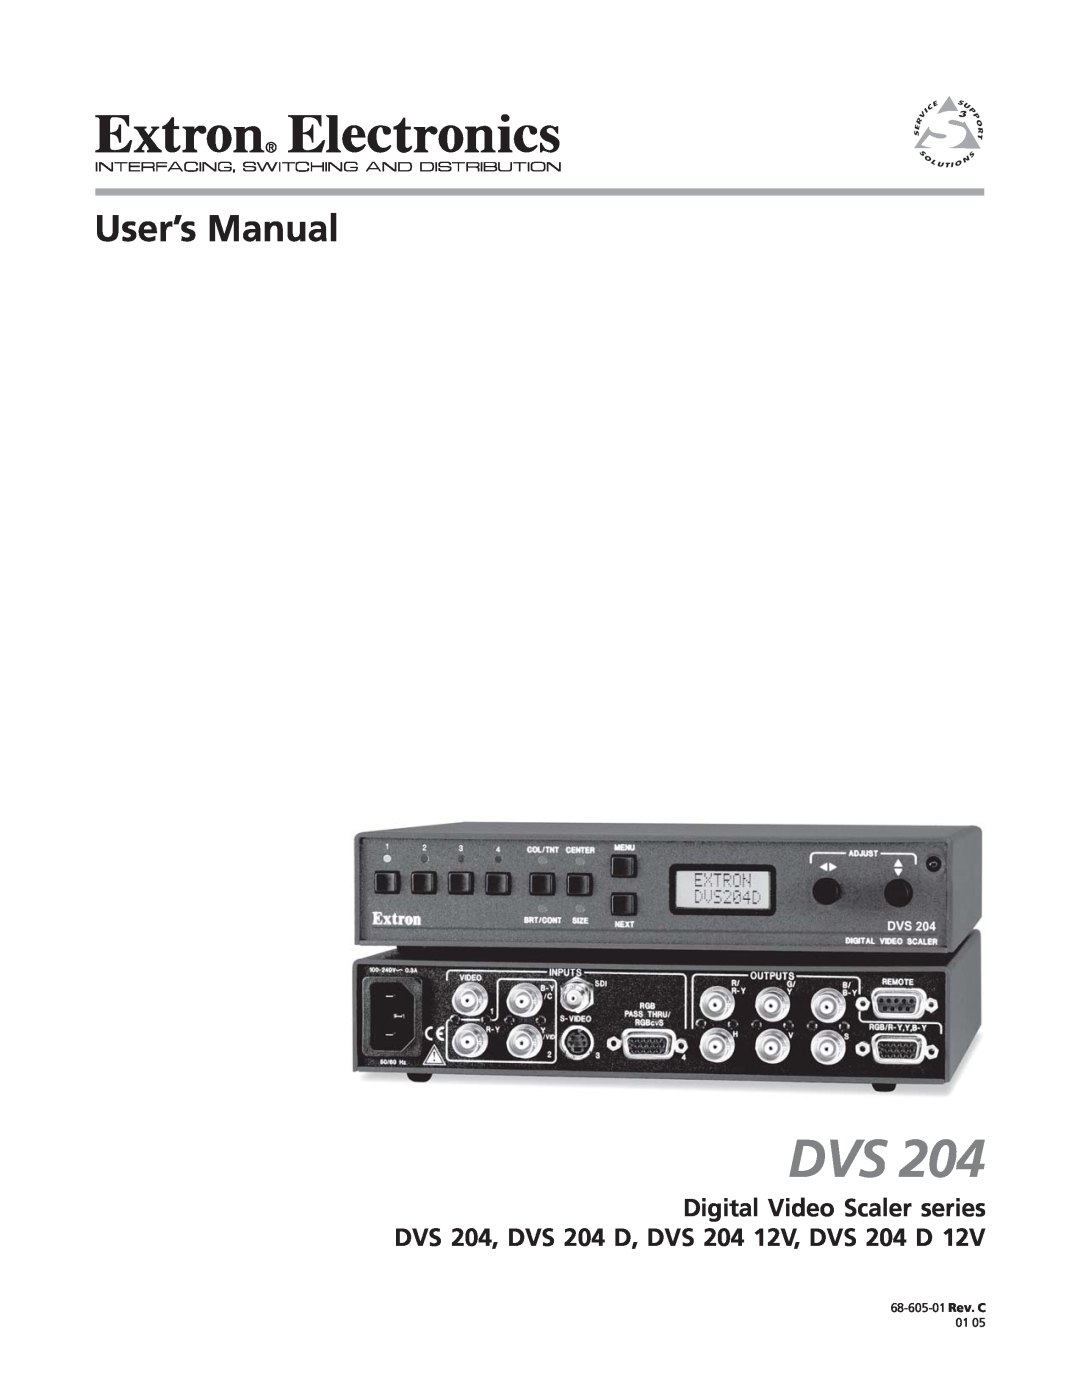 Extron electronic DVS 204 D 12V, DVS 204 12V manual 68-605-01 Rev. C 